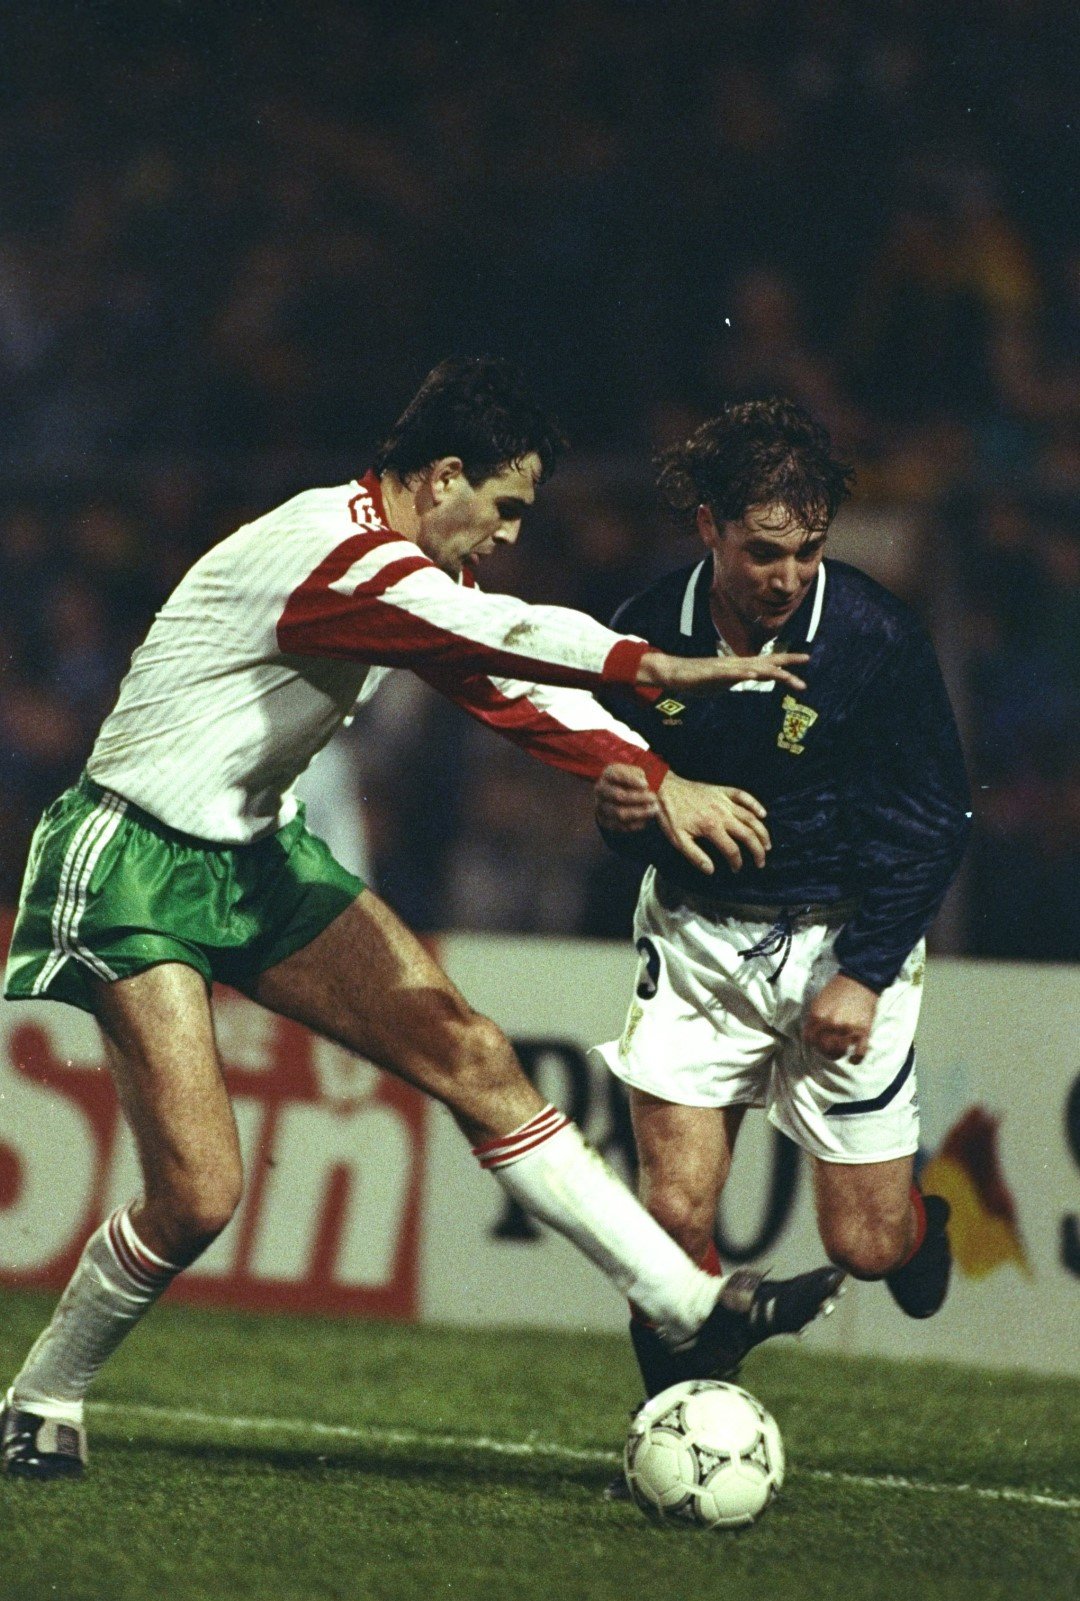 Ники Илиев срещу звездата на съперника Али Макойст в момент от същия мач - Шотландия - България на "Хемпдън", през 1991 г. 